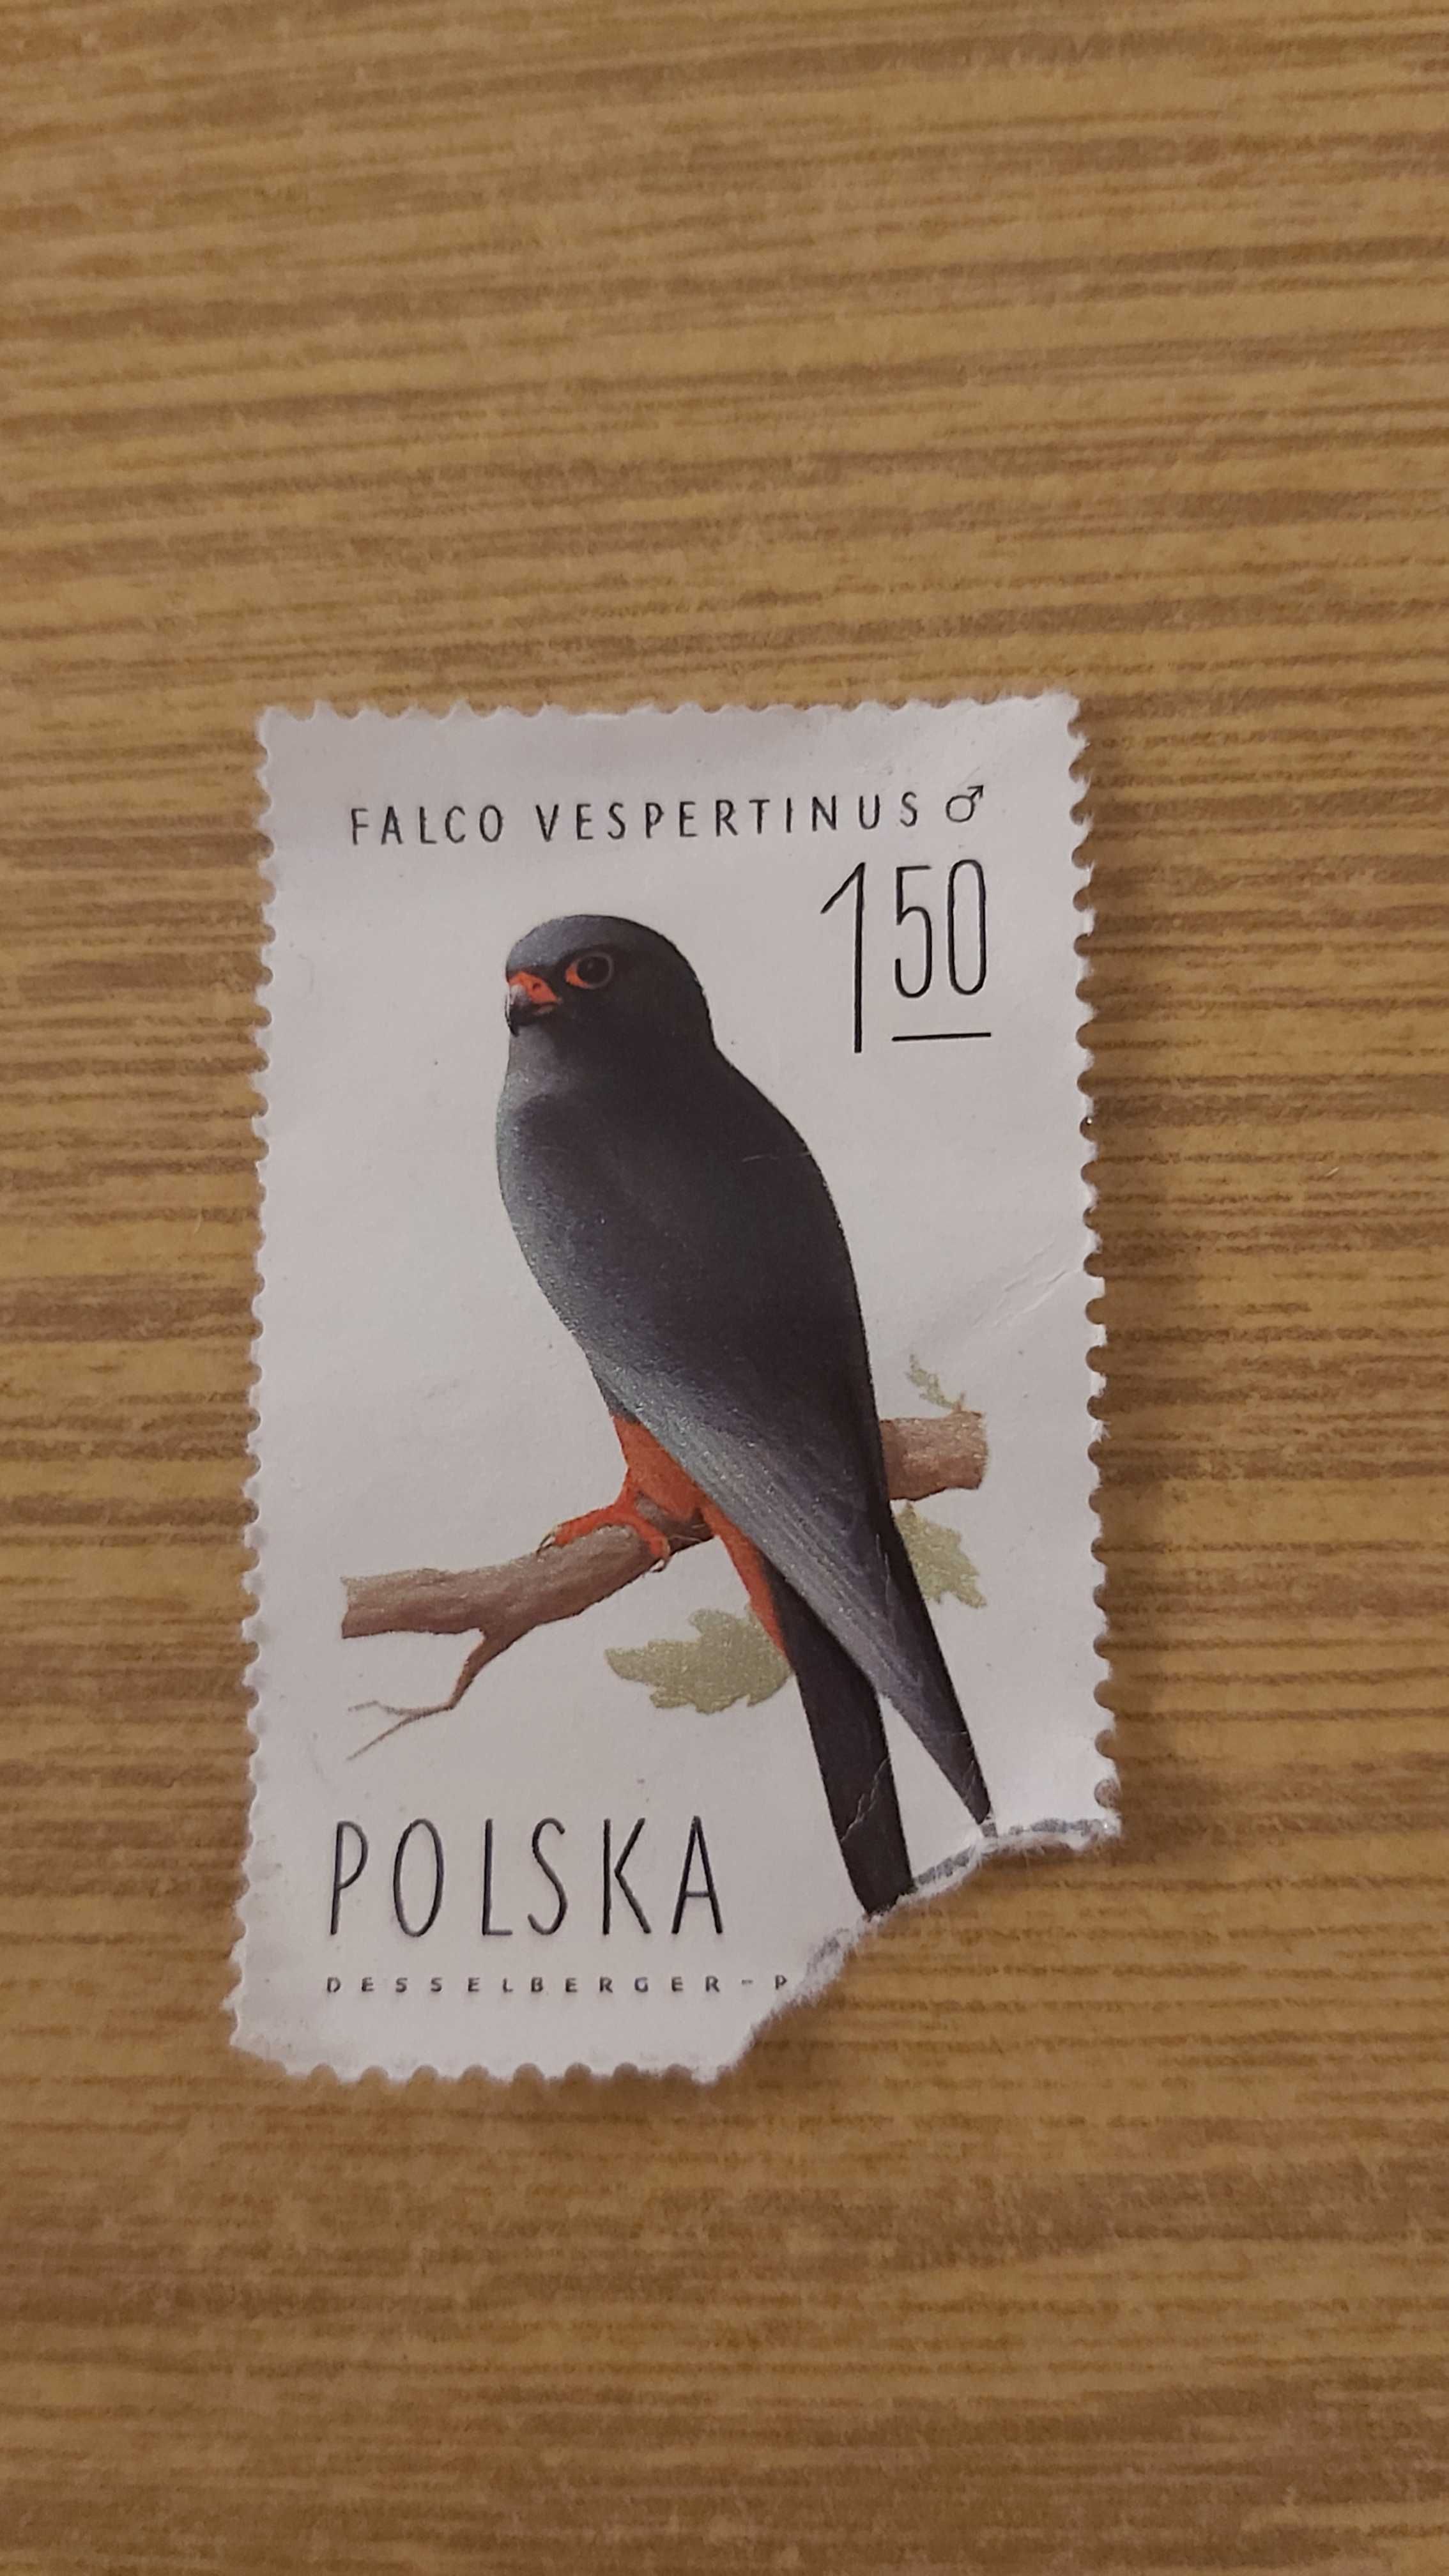 Znaczek pocztowy Falco Vespertinus kobczyk